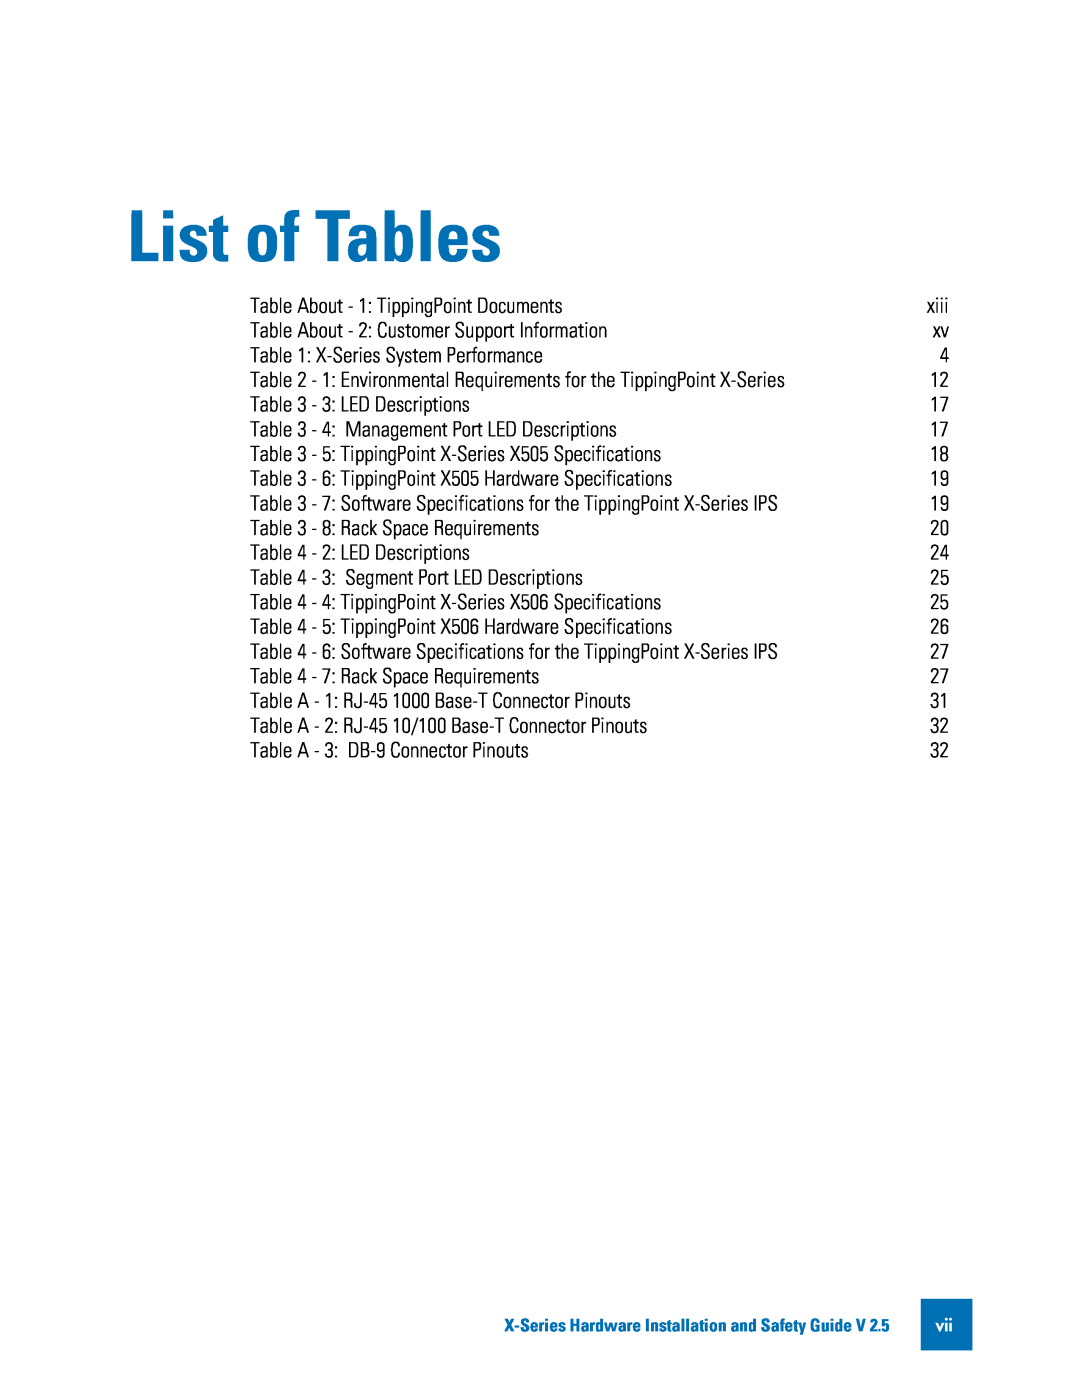 3Com TECHD-0000000122 manual List of Tables 